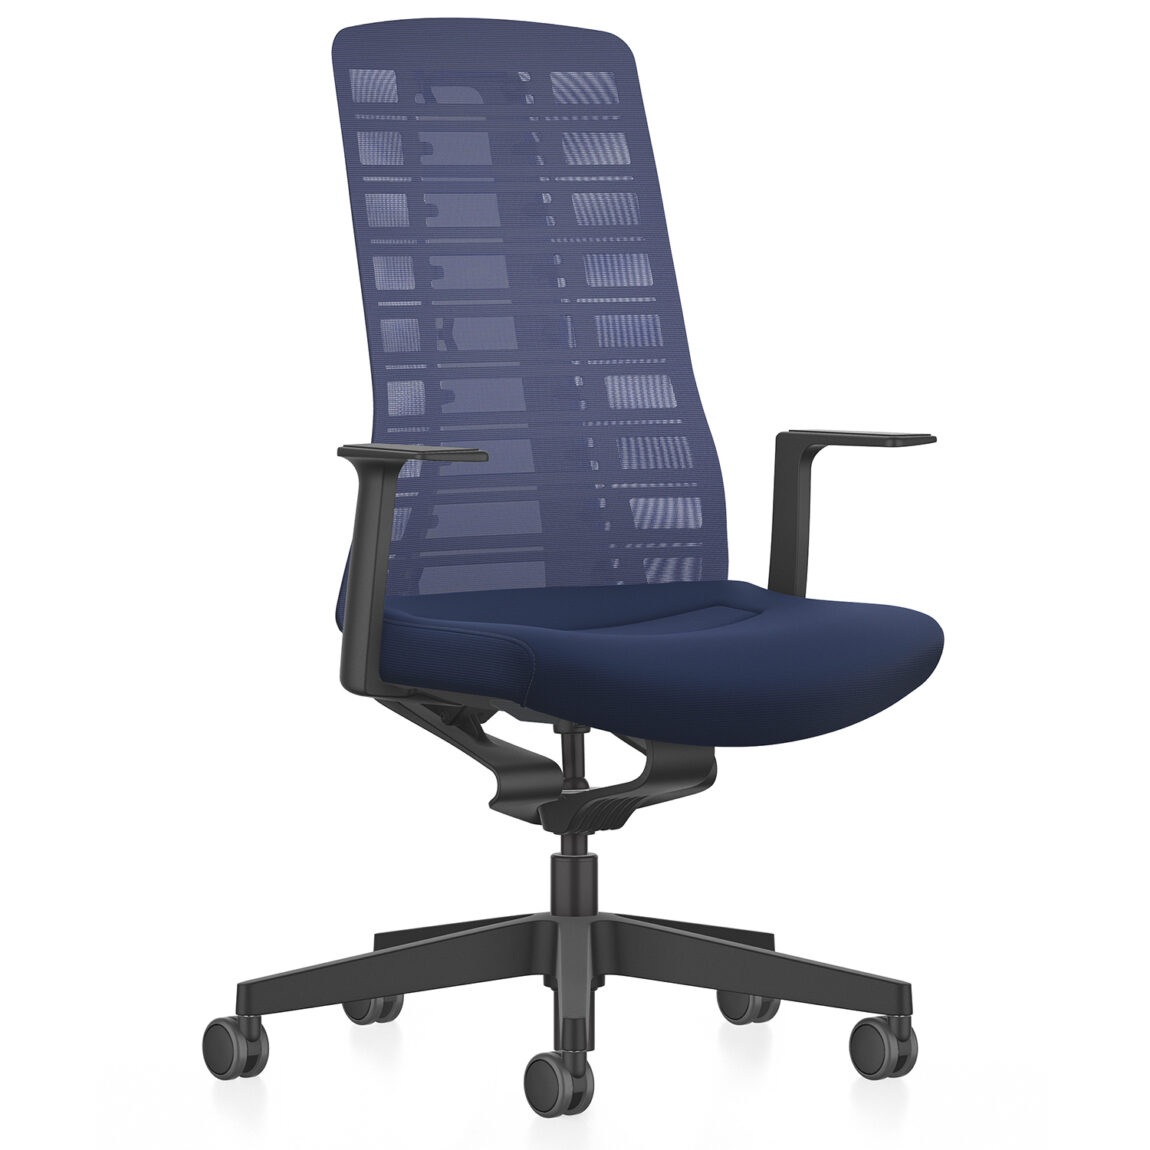 Interstuhl designové kancelářské židle